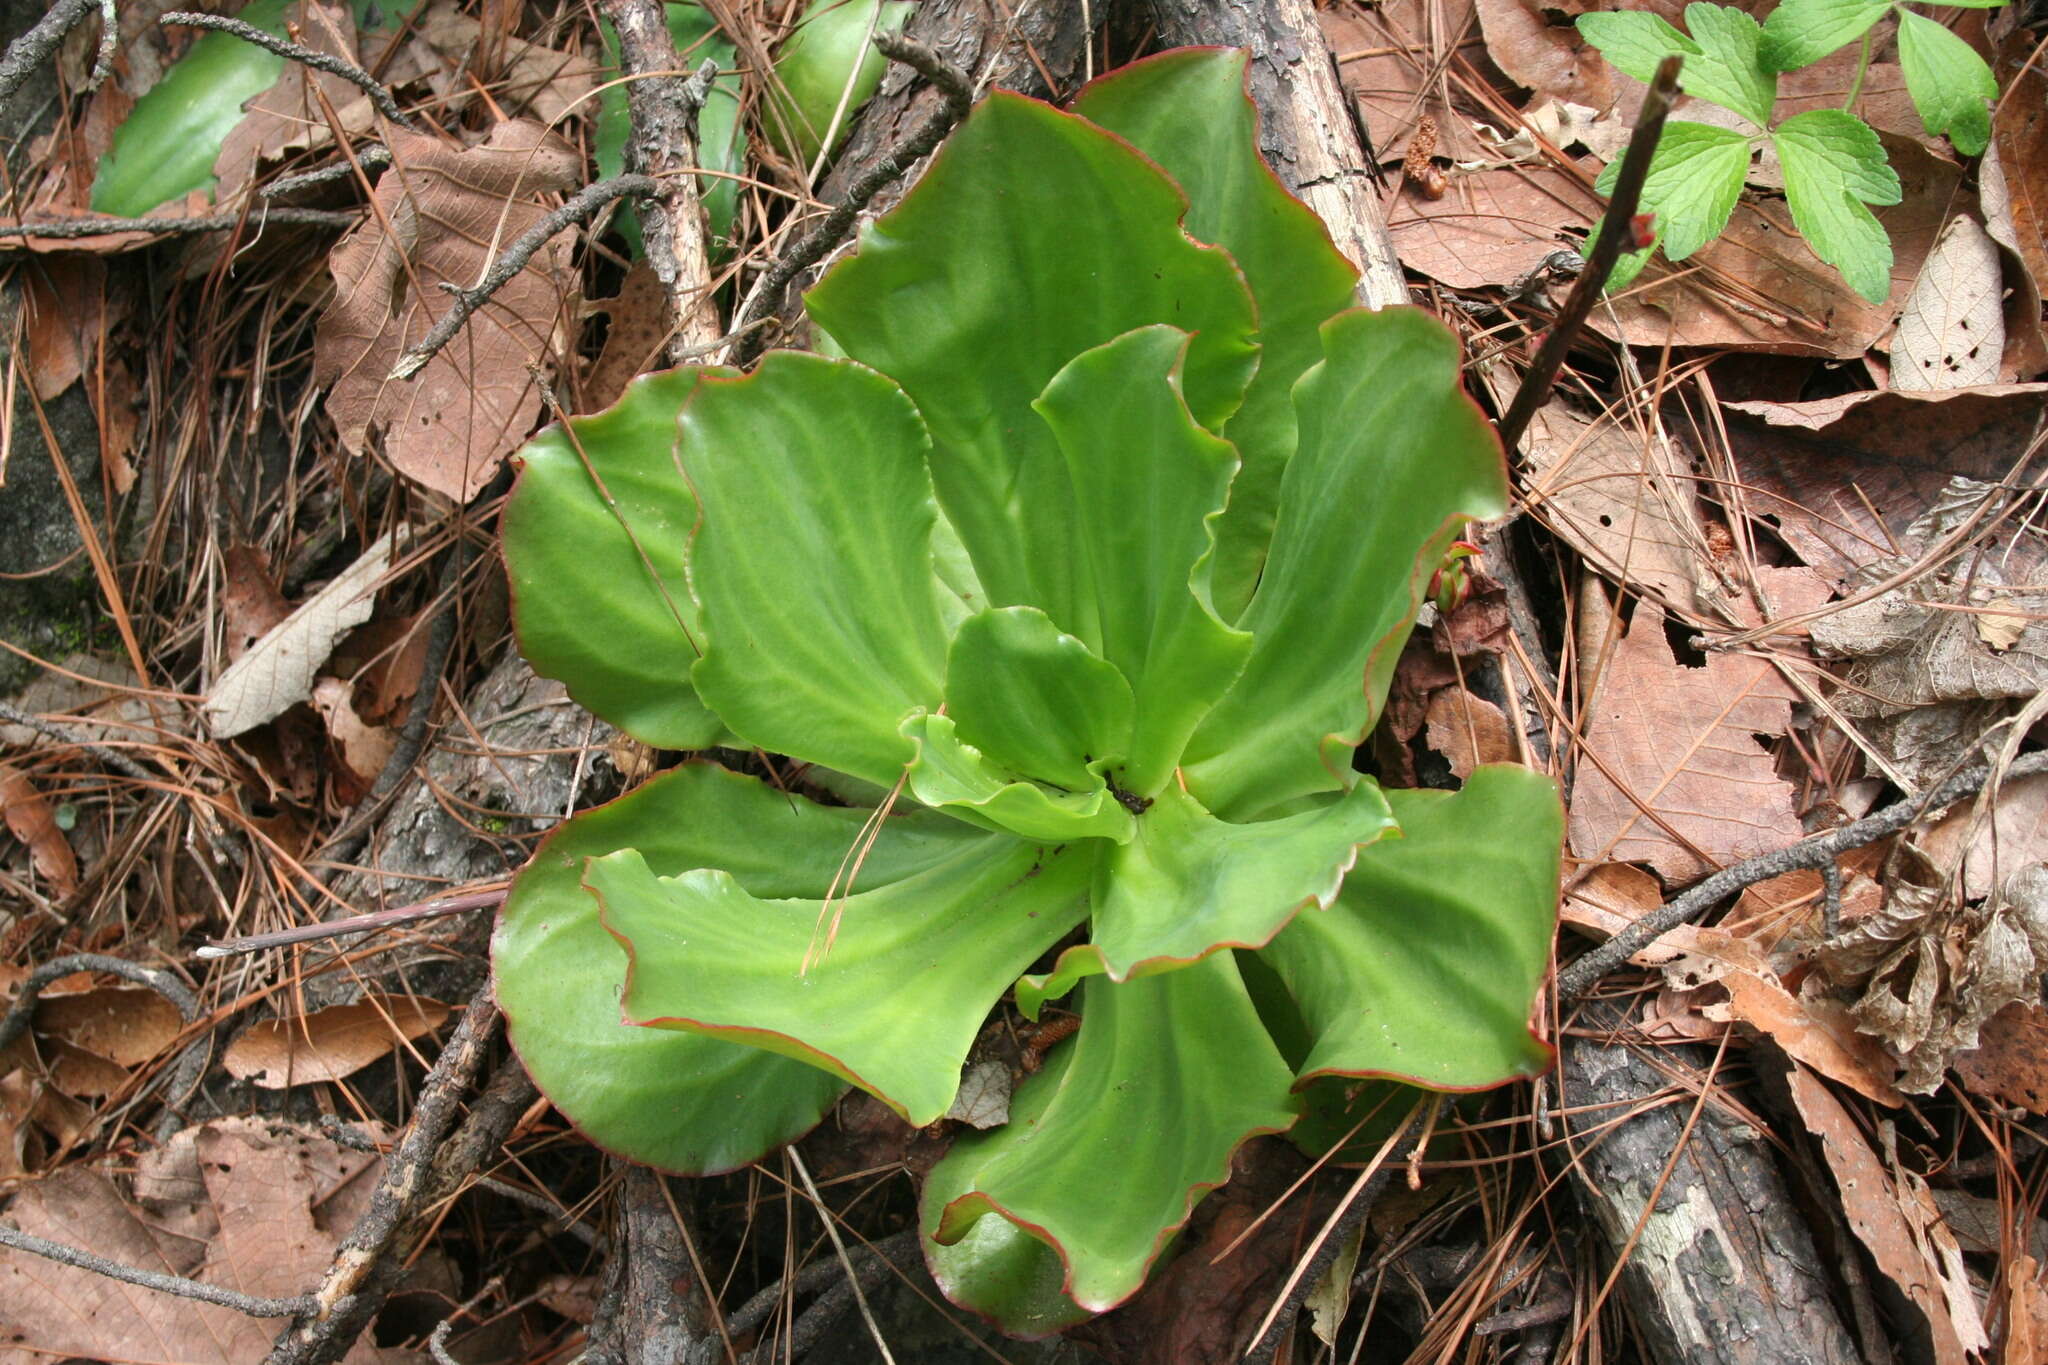 Image of succulent